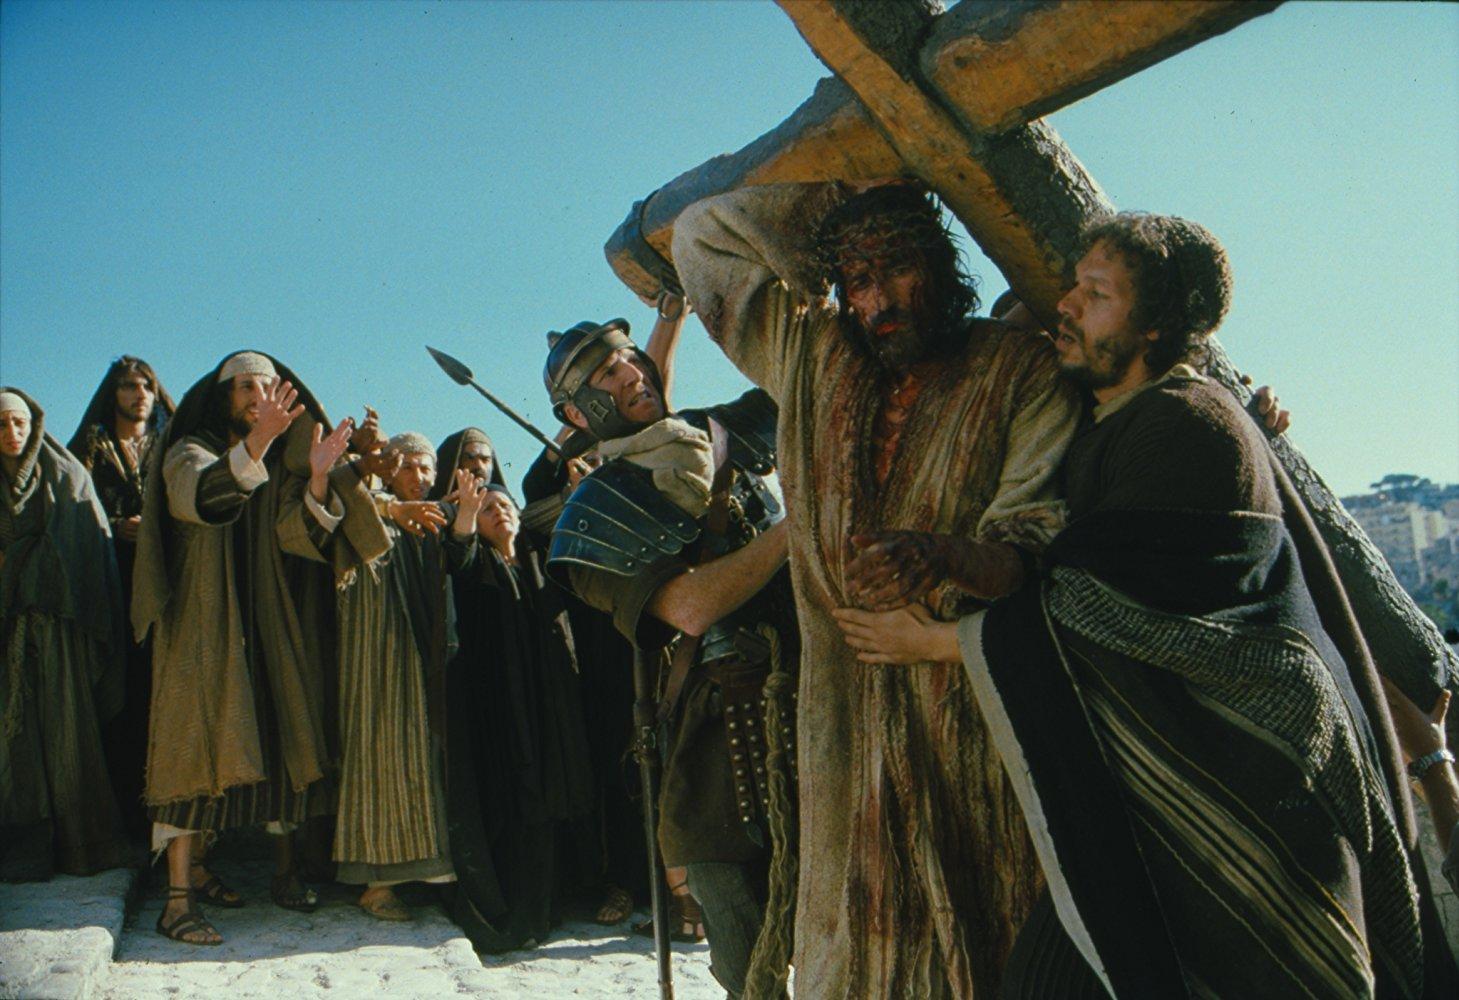 مشاهدة فيلم The Passion Of The Christ 2004 مترجم HD اون لاين